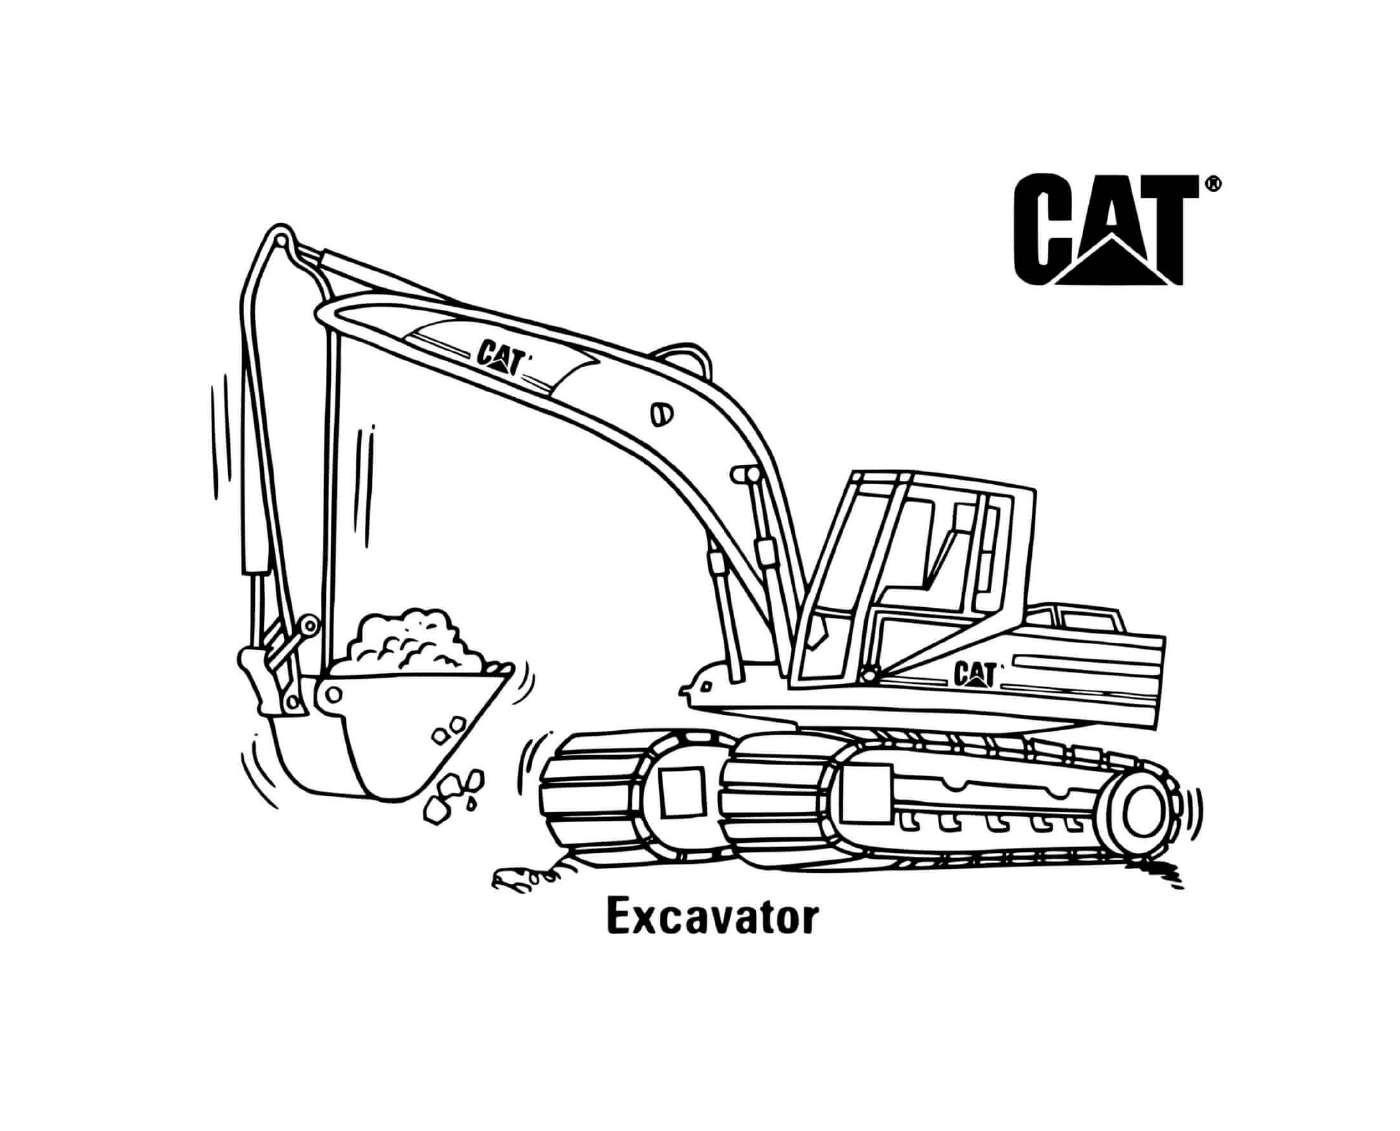  Camión excavador CAT utilizado para excavación 